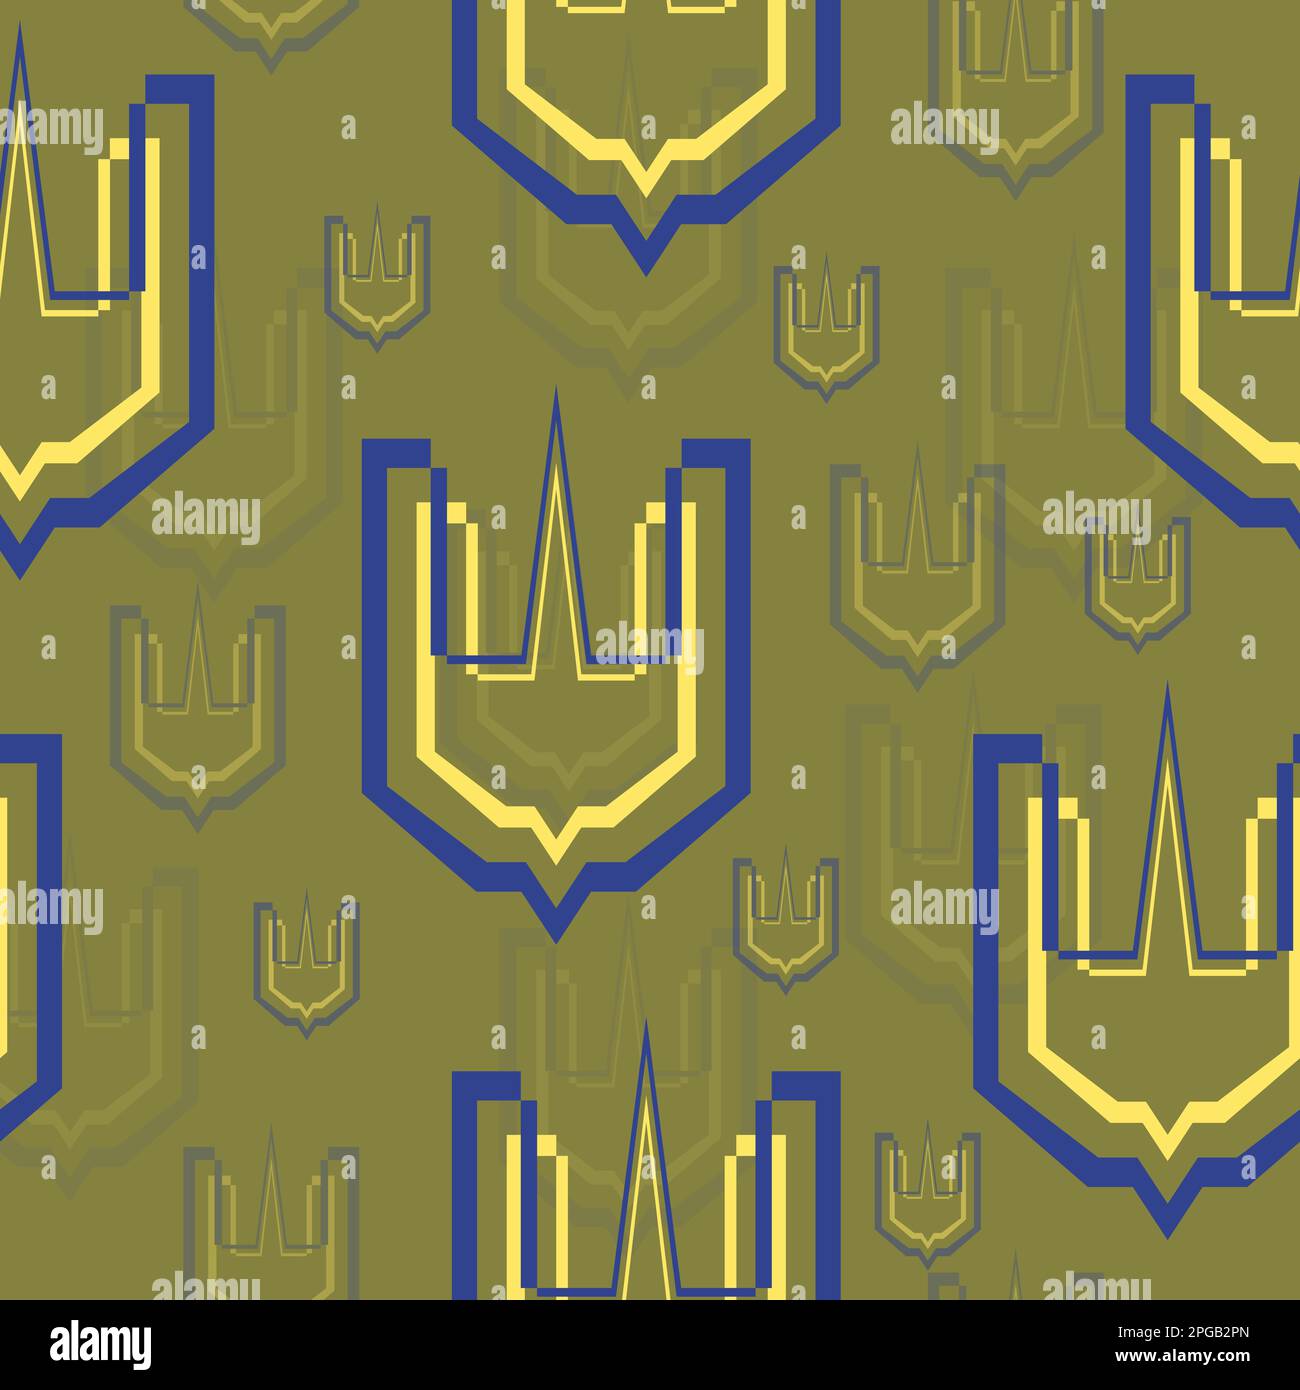 Nahtloses Muster. Dreizack-Emblem auf dem Schild. Symbol der ukrainischen Armee. Militärabzeichen. Farbige Vektordarstellung isoliert auf grünem Hintergrund. Stock Vektor